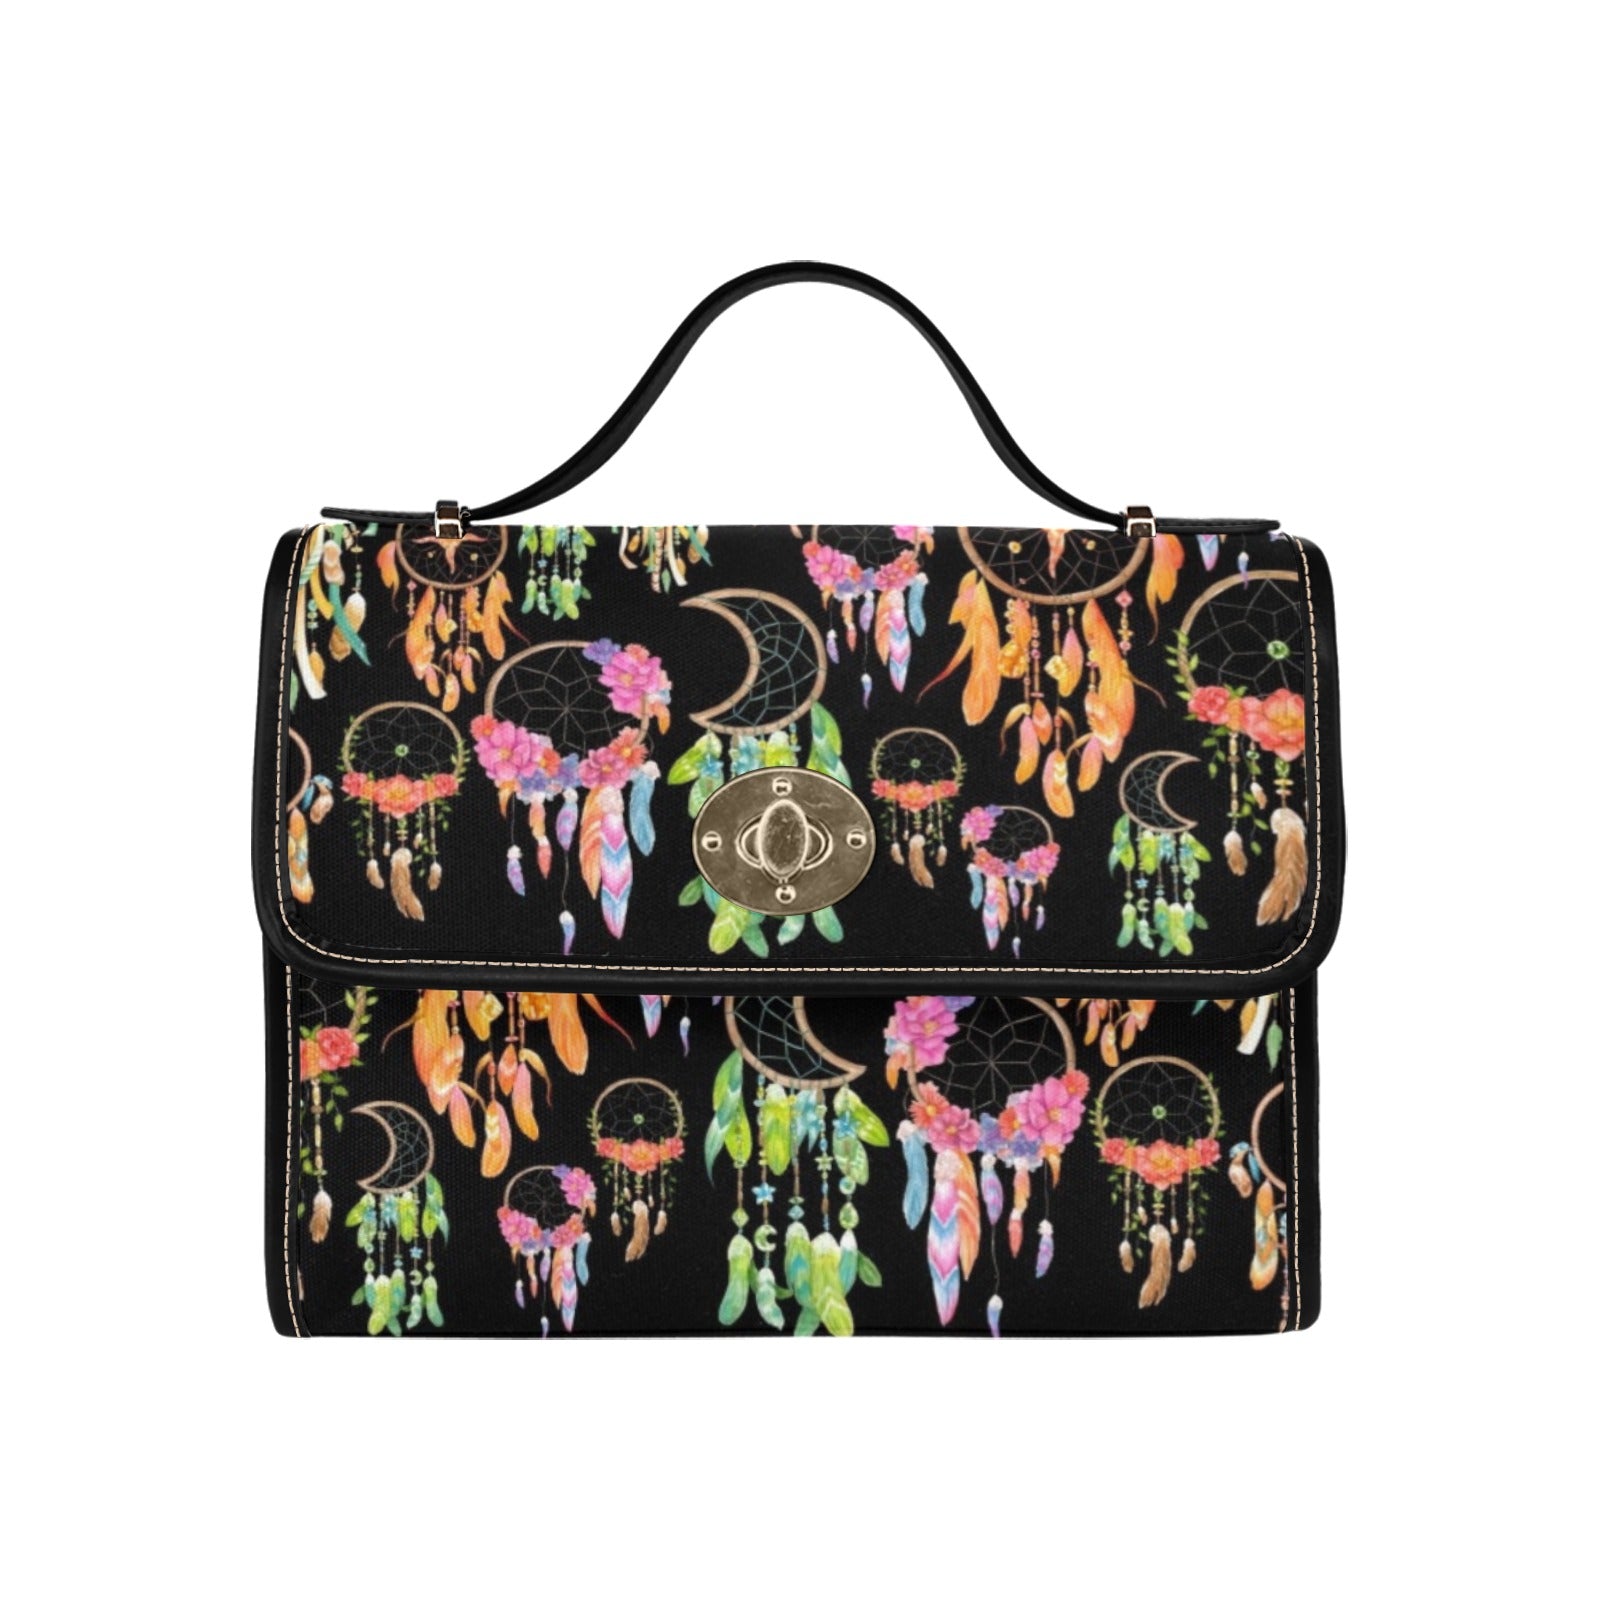 Dream Catchers - Waterproof Canvas Handbag